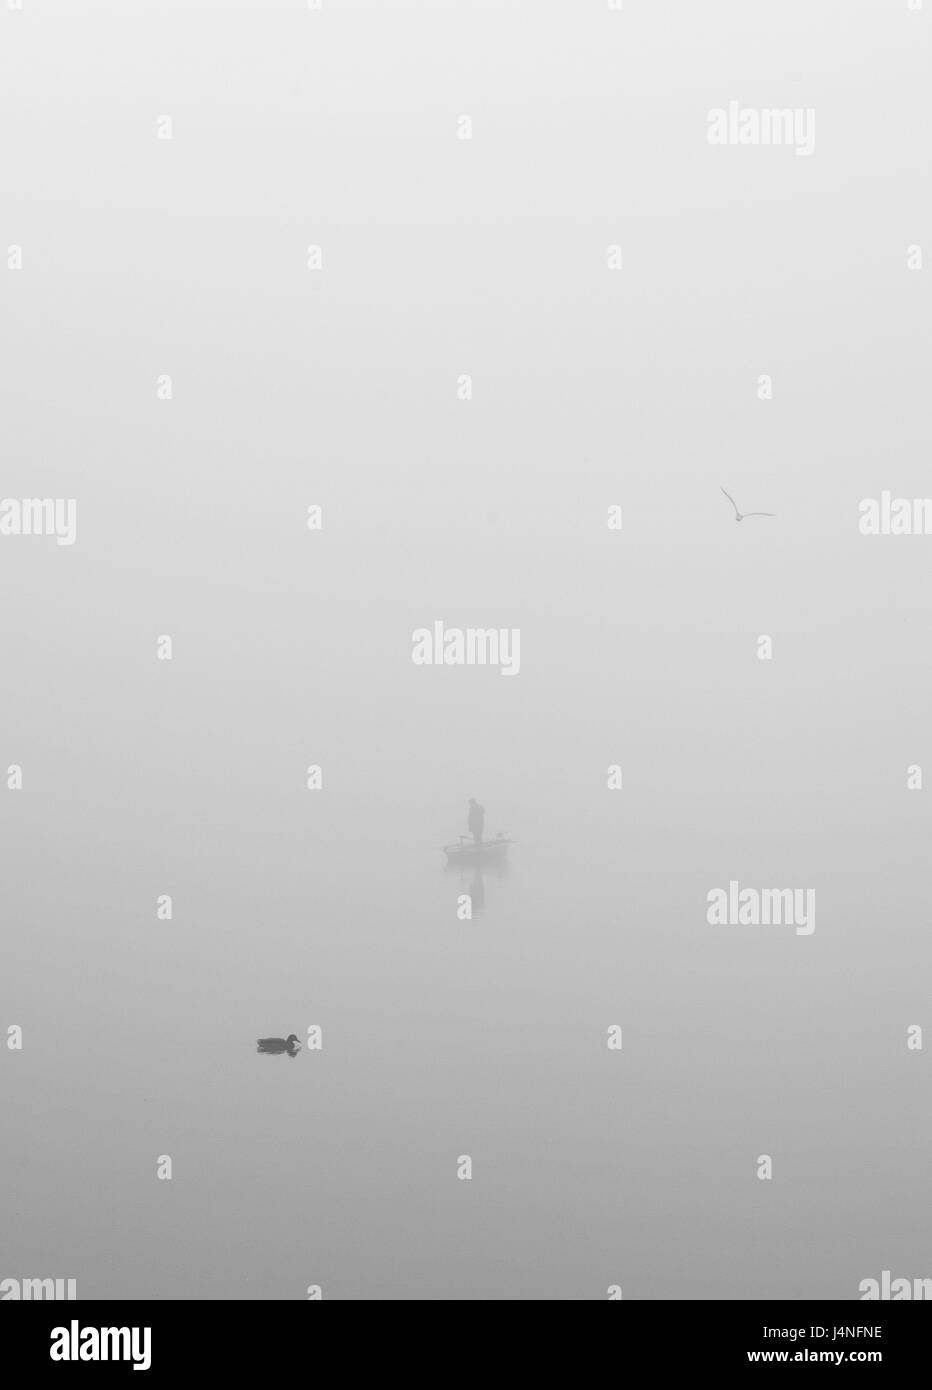 Lago, nebbia, silhouette, barca da pesca, anatra, acque, persona, persona, oar boot, animale, cupo, deprimenti, nebbia patch, misteriosamente, non riconosciuti, copia di spazio, Foto Stock